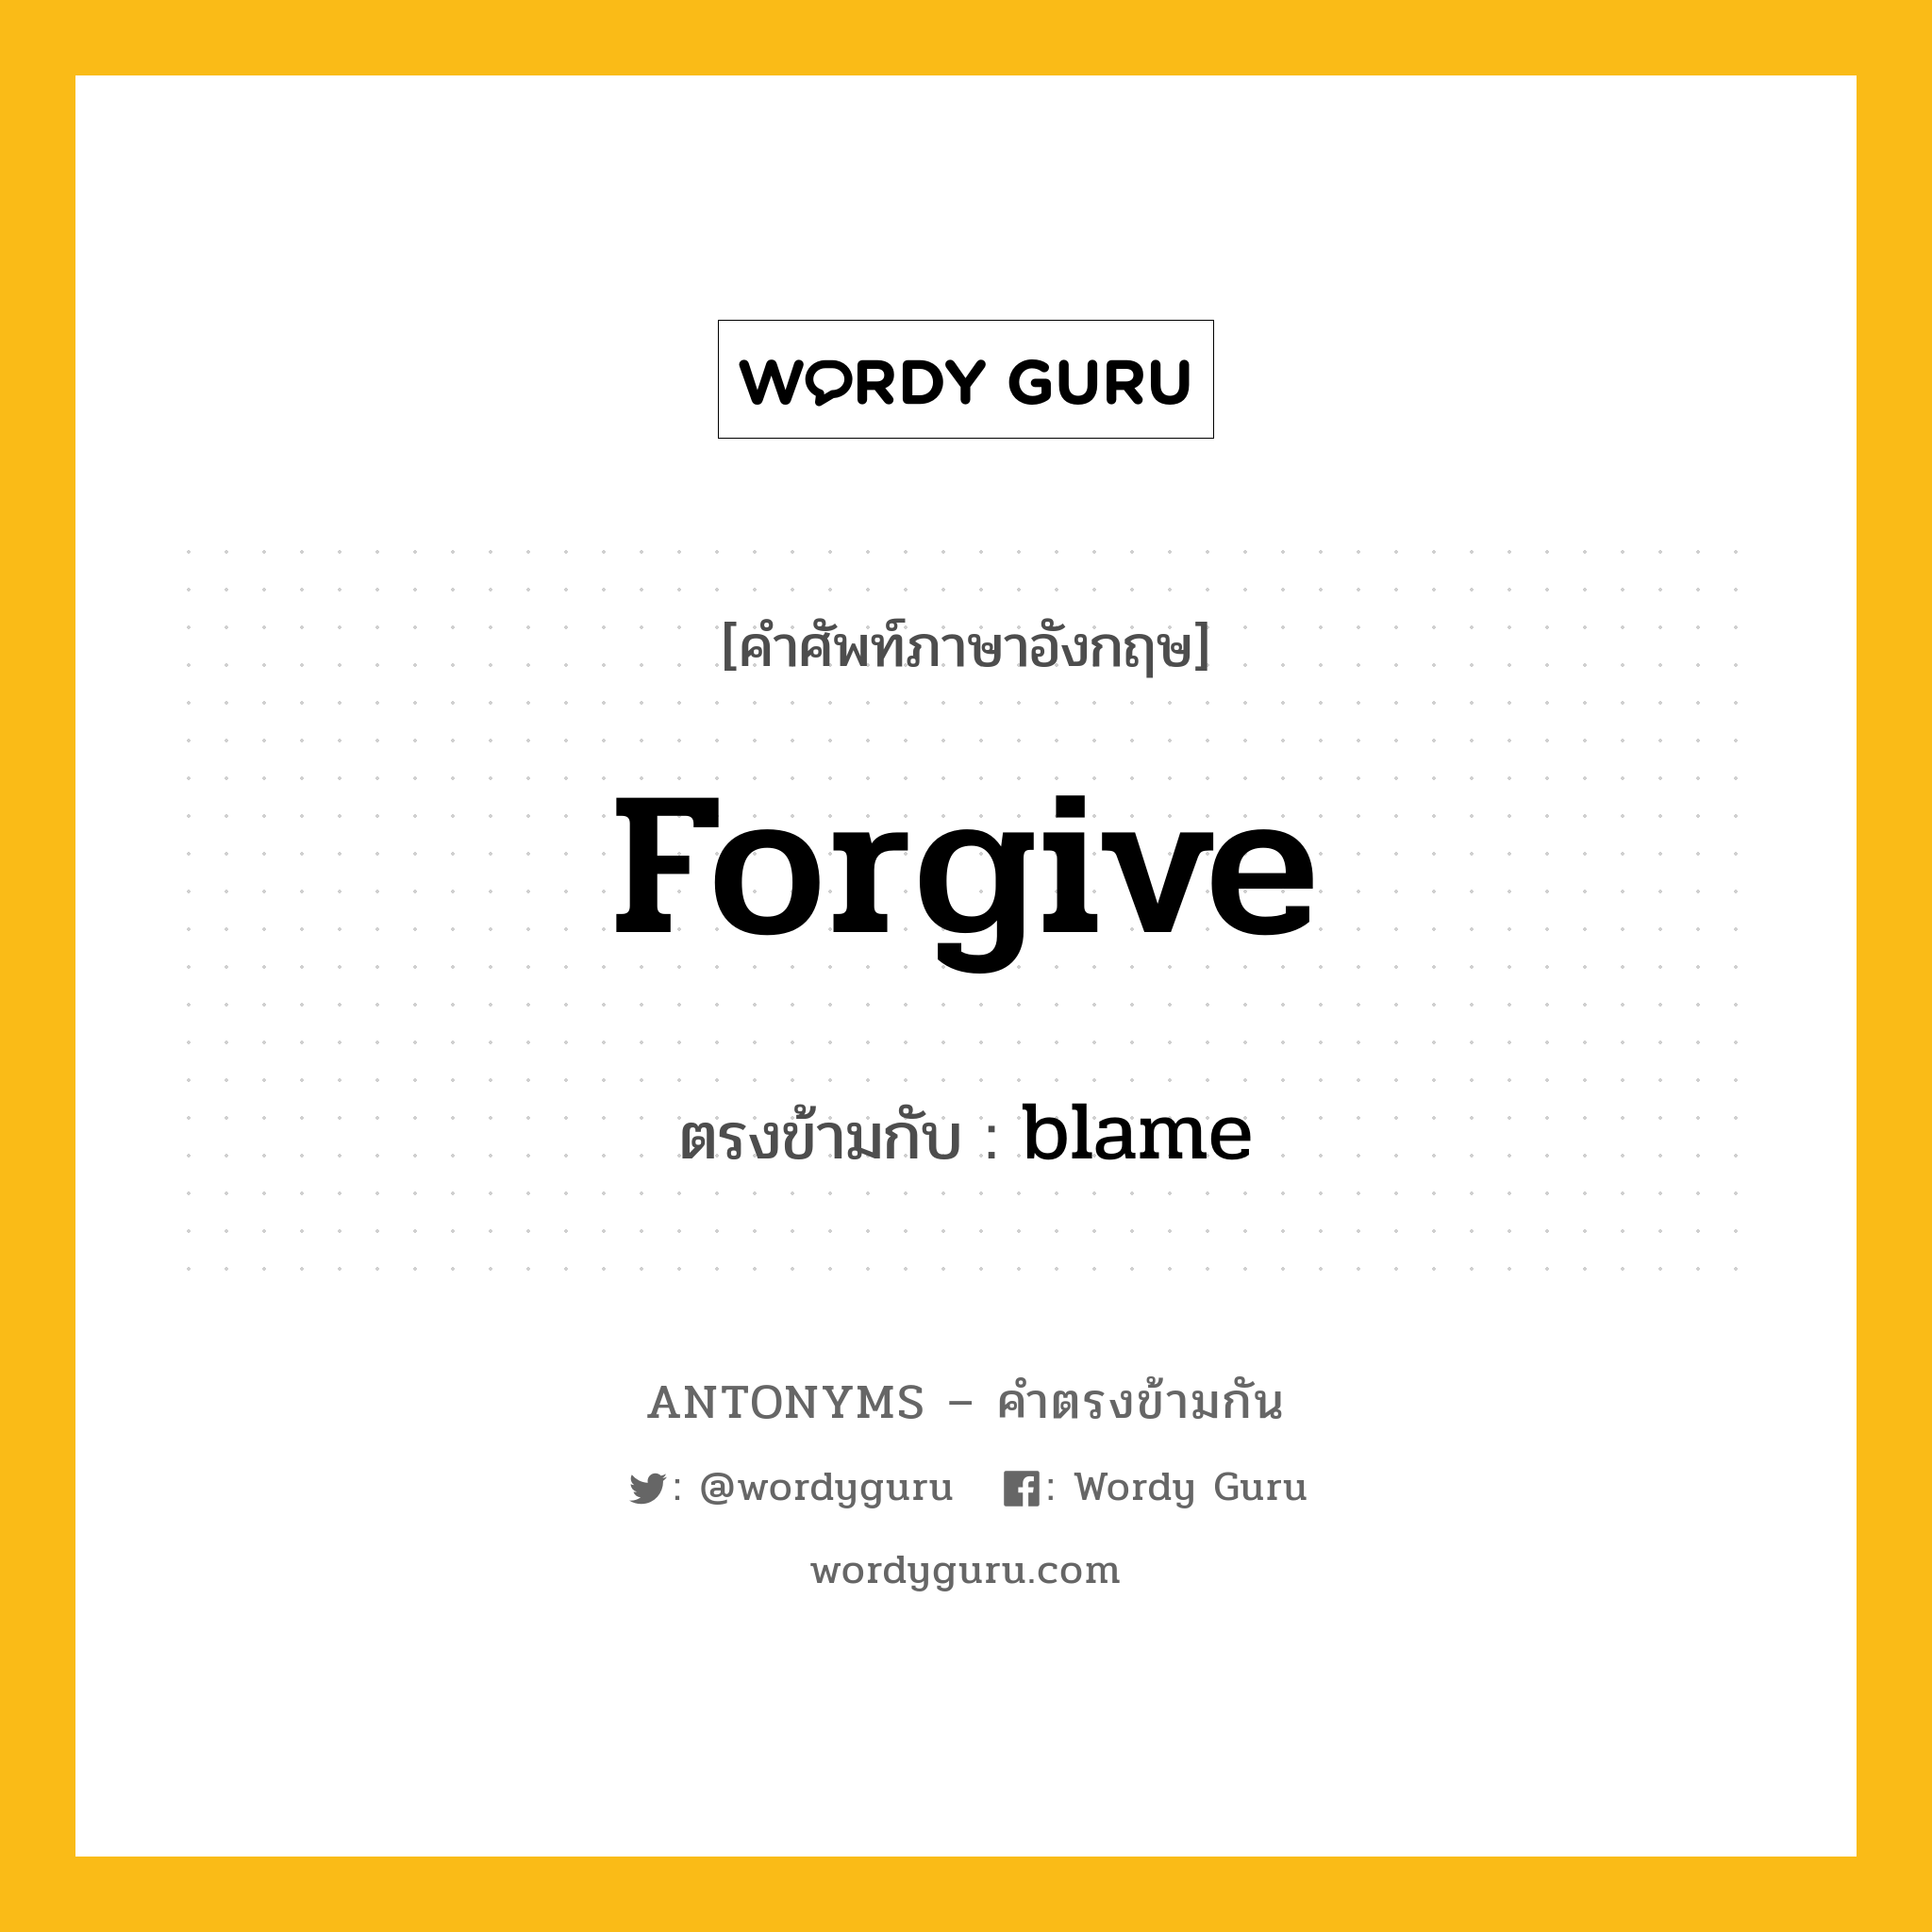 forgive เป็นคำตรงข้ามกับคำไหนบ้าง?, คำศัพท์ภาษาอังกฤษ forgive ตรงข้ามกับ blame หมวด blame